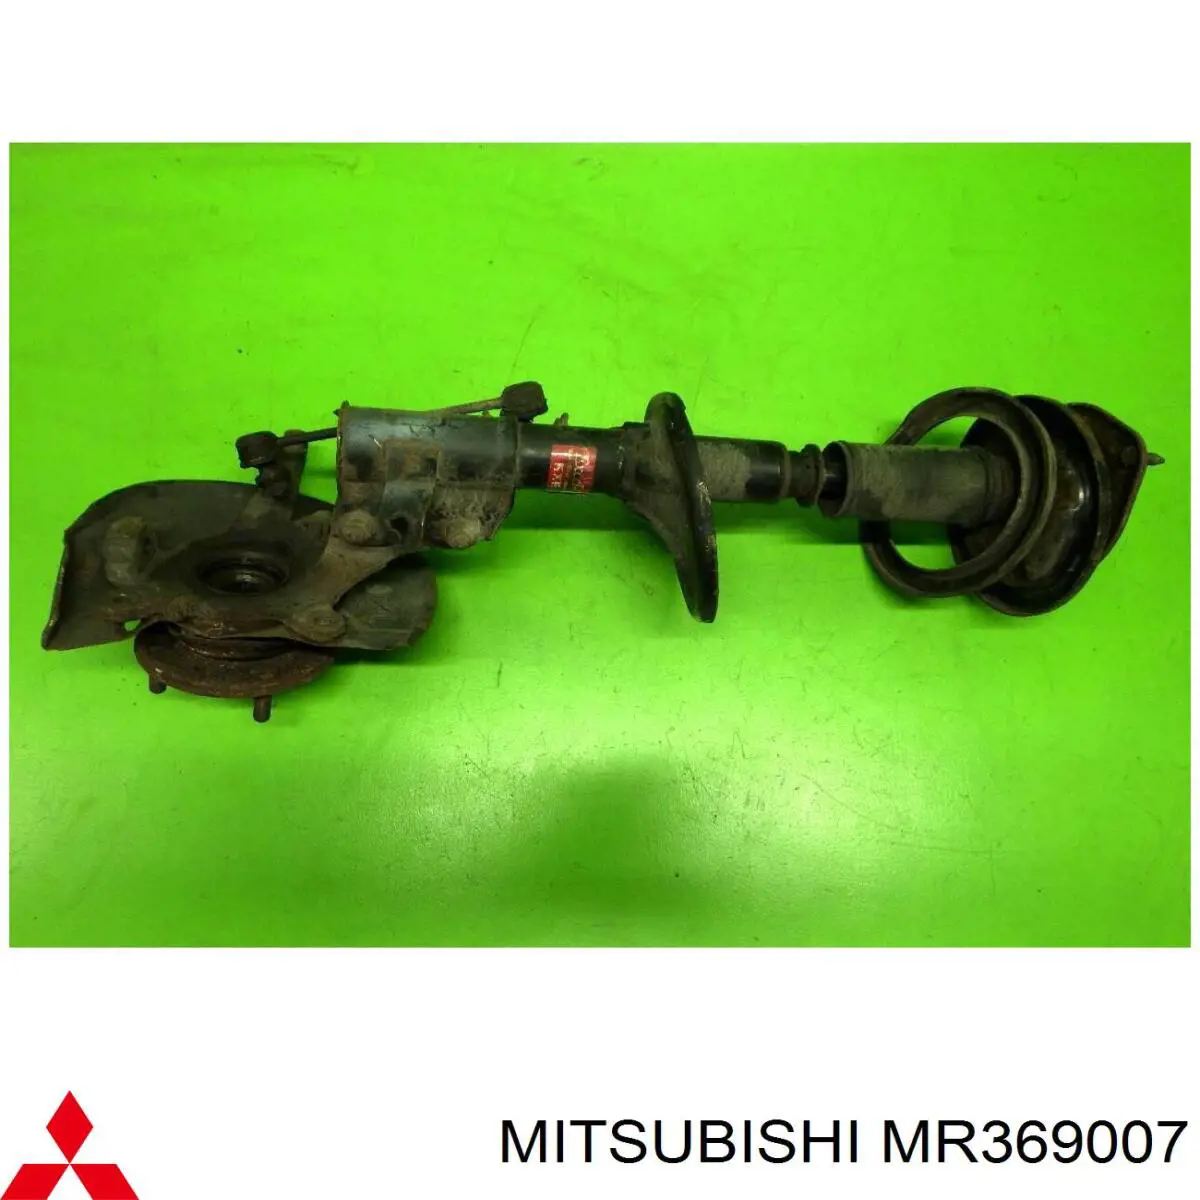 MR369007 Mitsubishi амортизатор передній, лівий